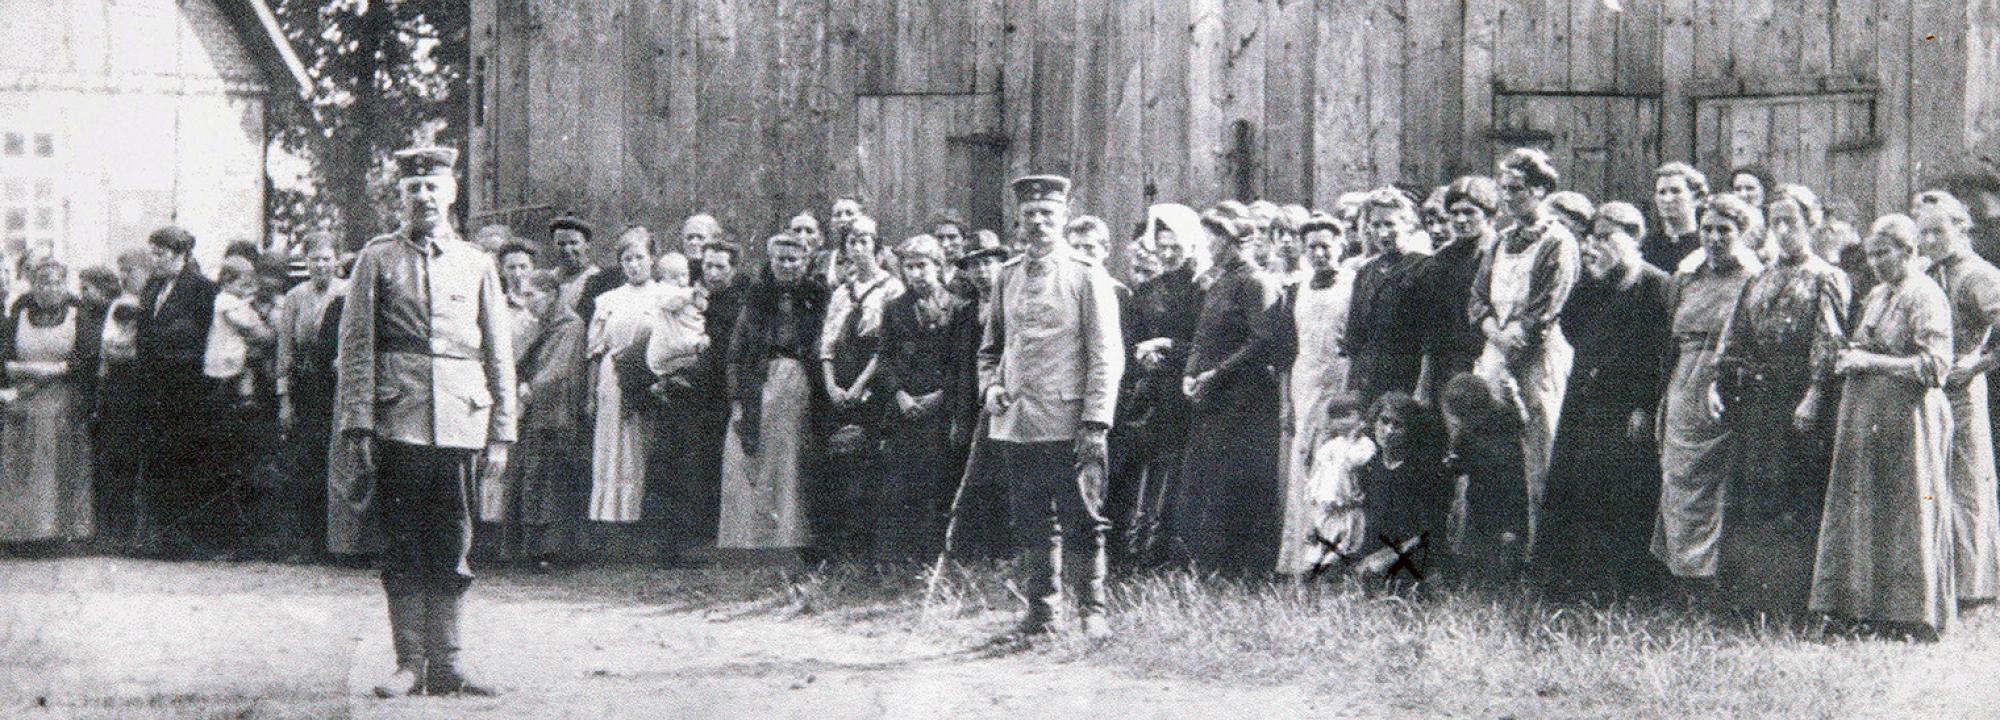  (2 ans) en Thérèse Delfosse 26 ans) in gevangenschap (otages, région de Tirlemont, 1914)